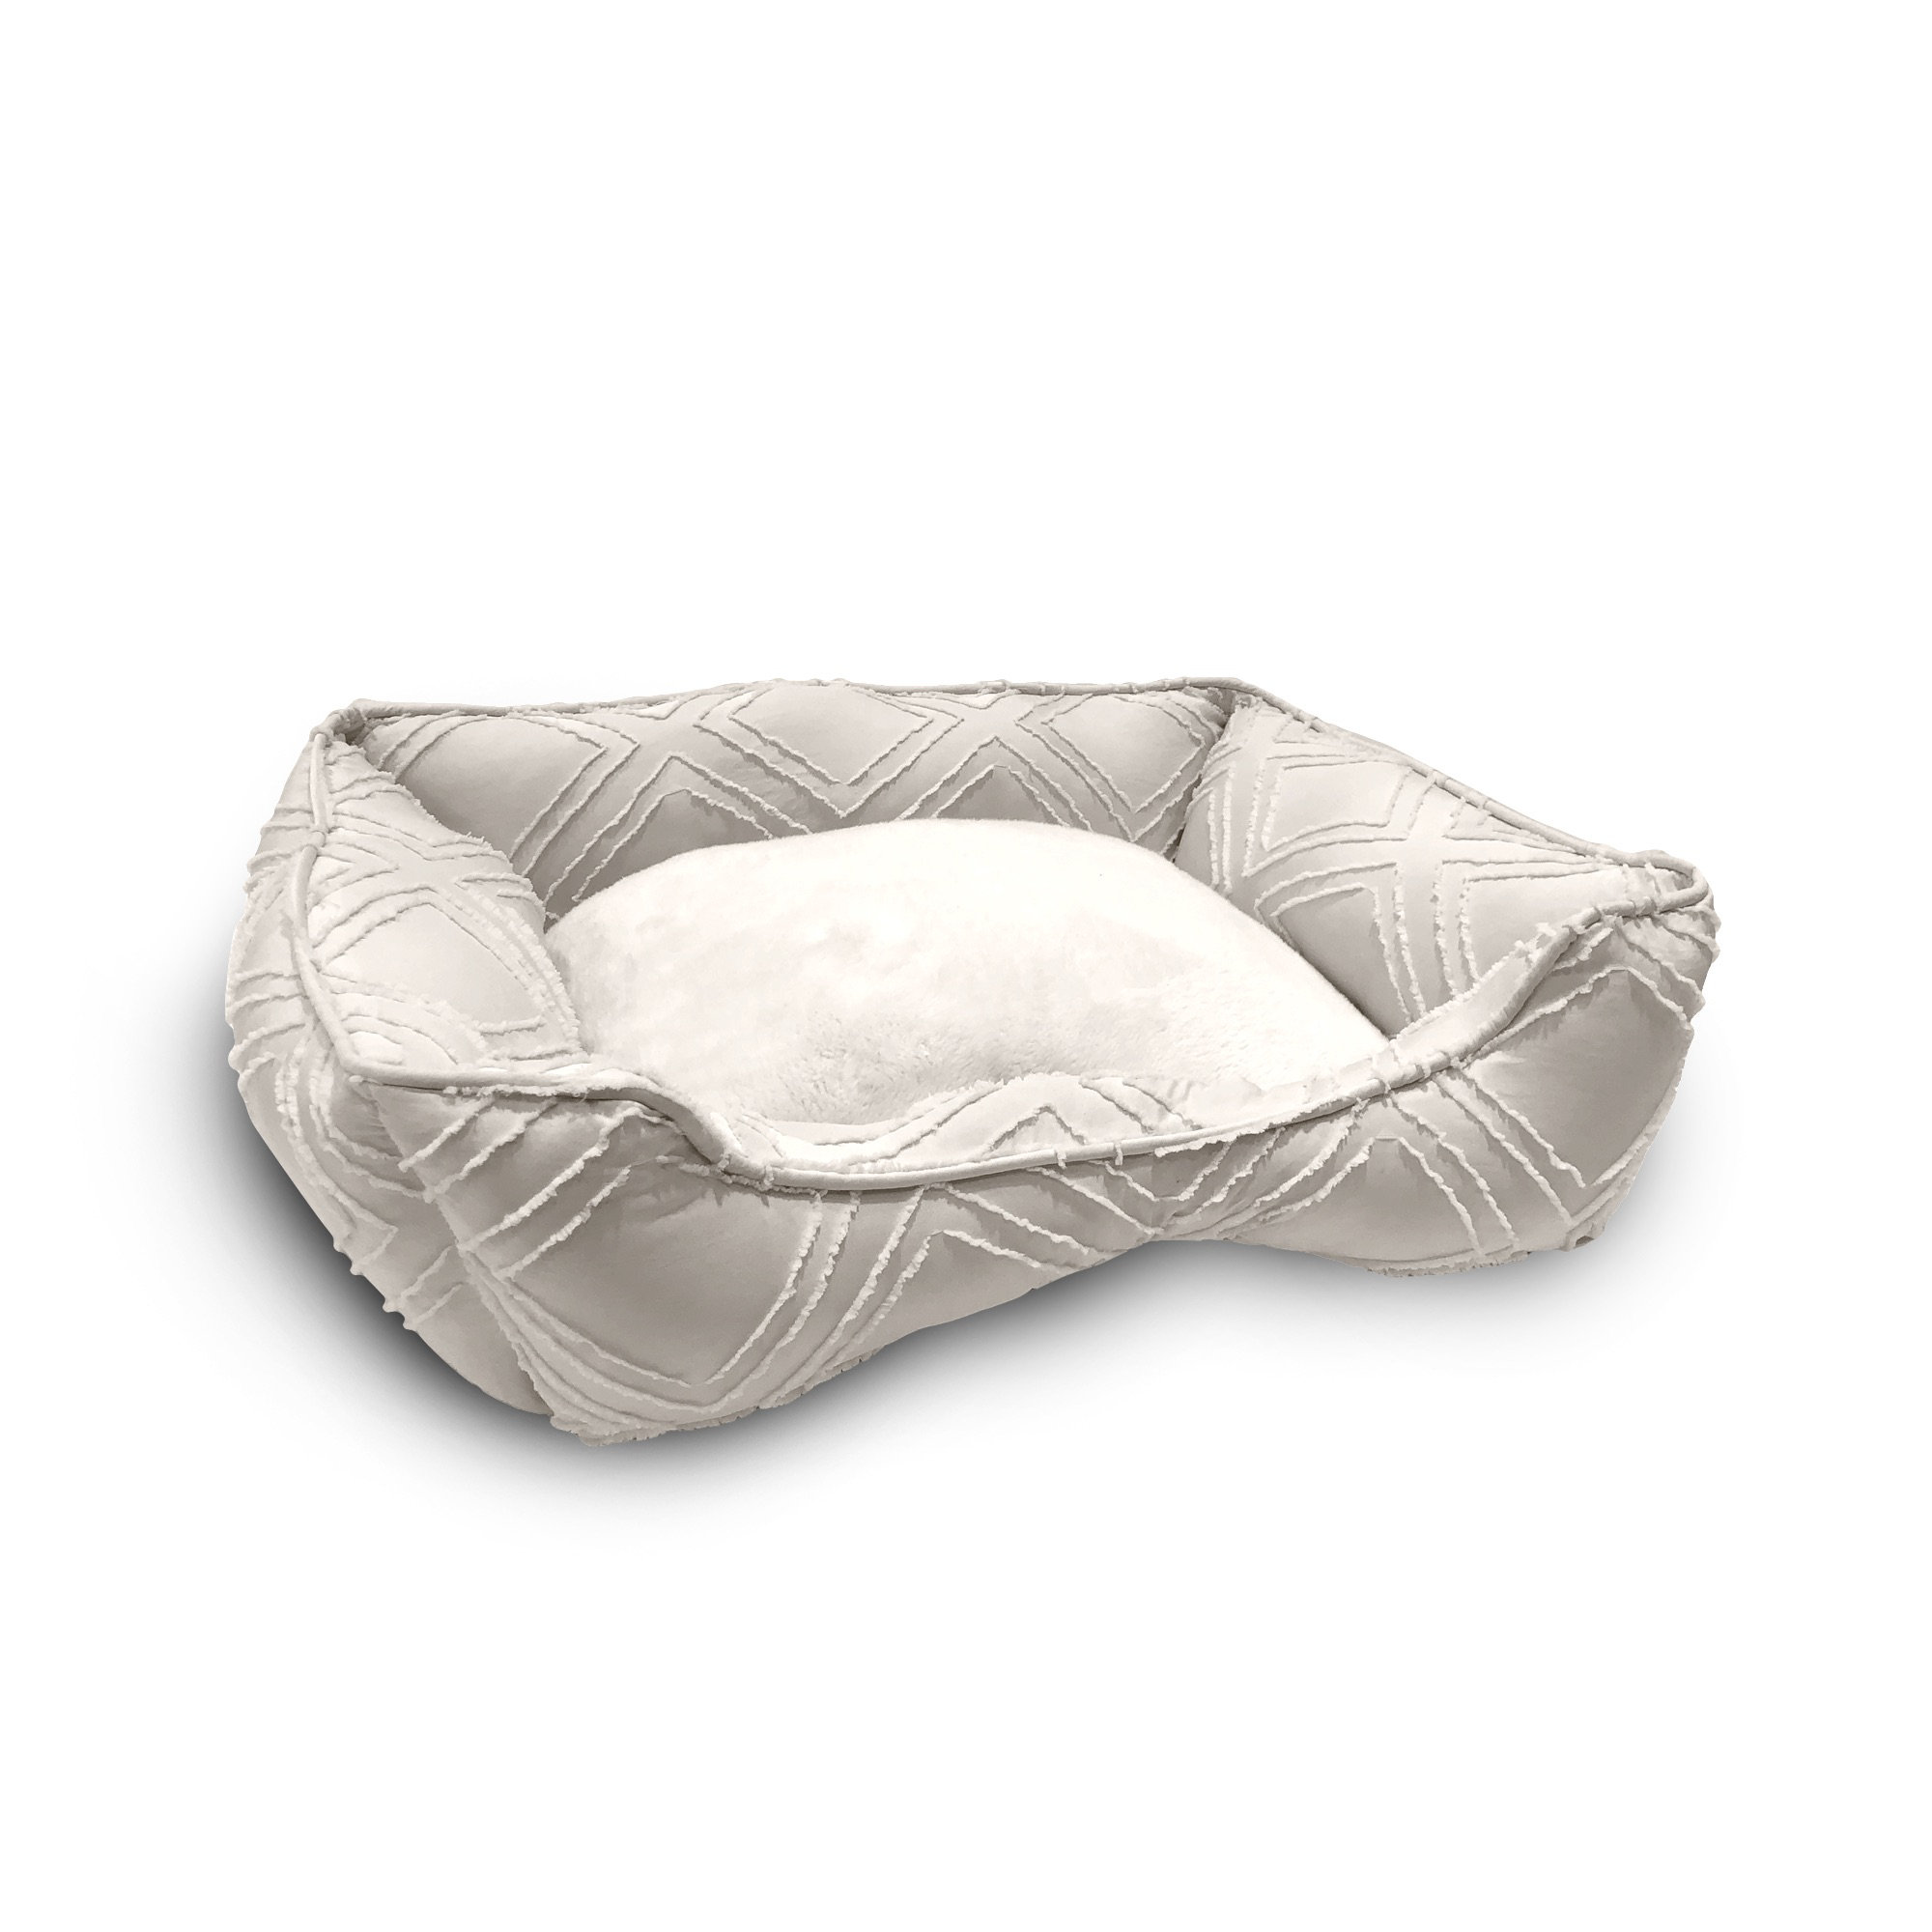 luxury dog beds